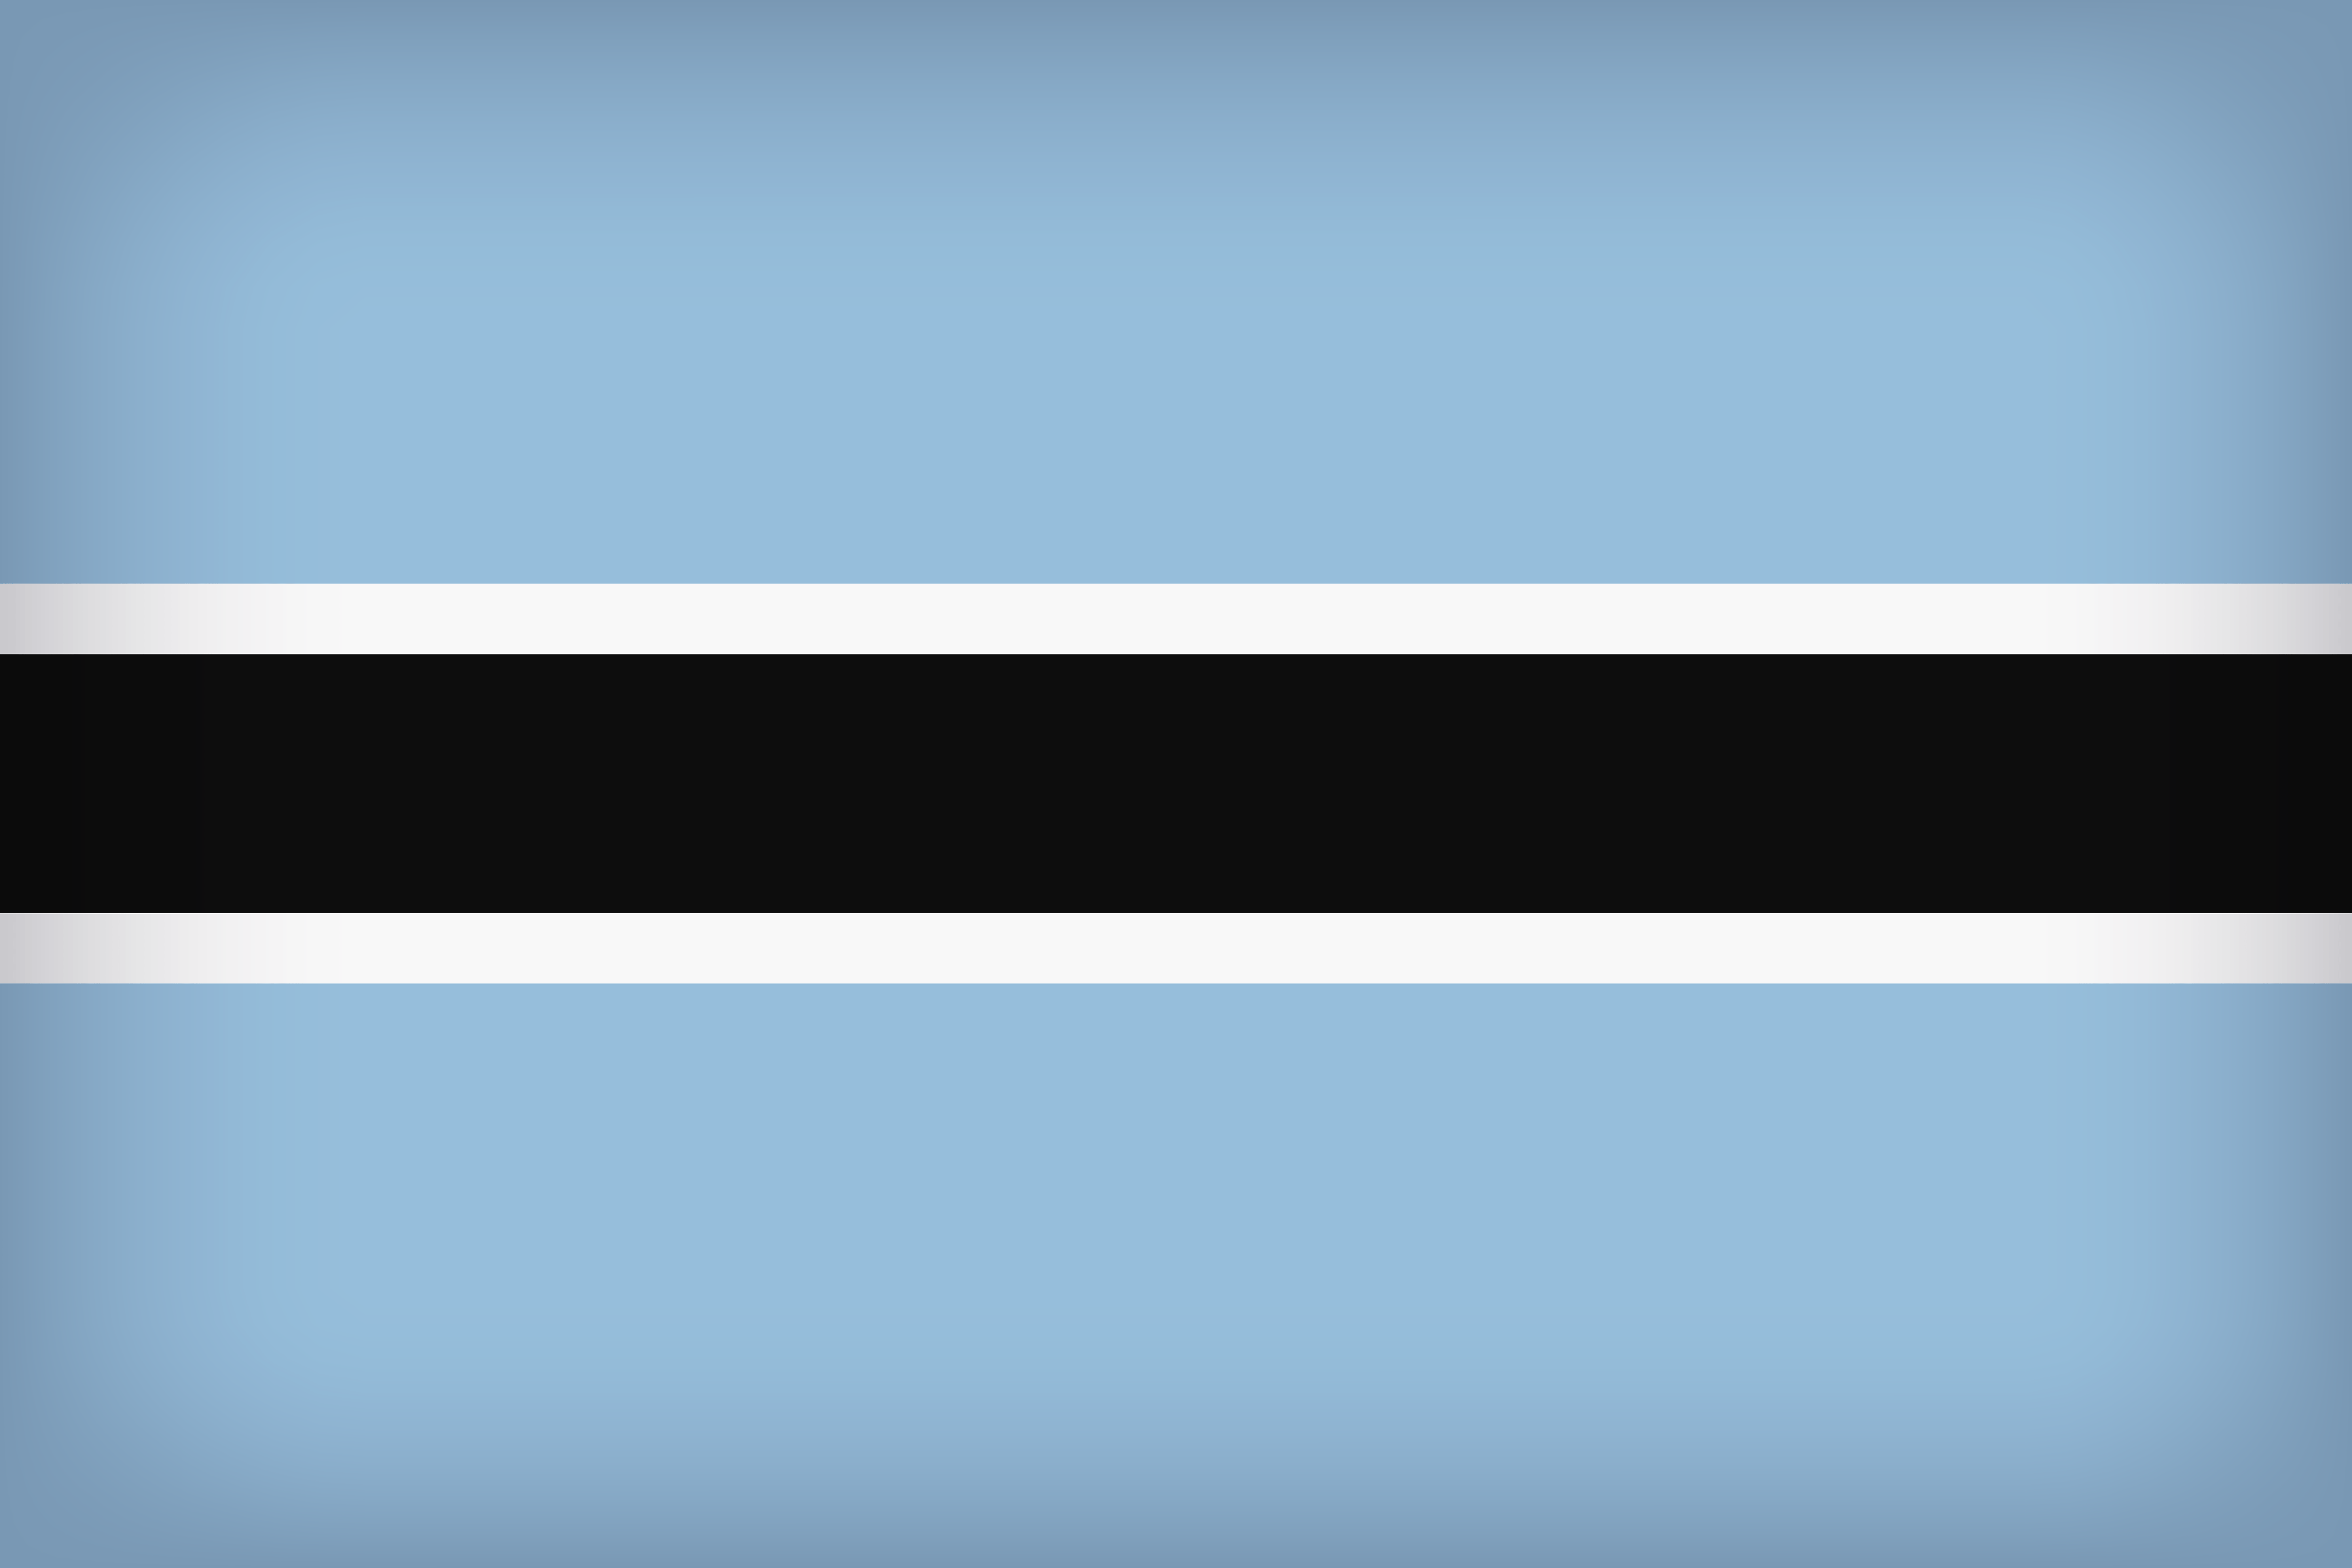 Botswana Large Flag Quality Image